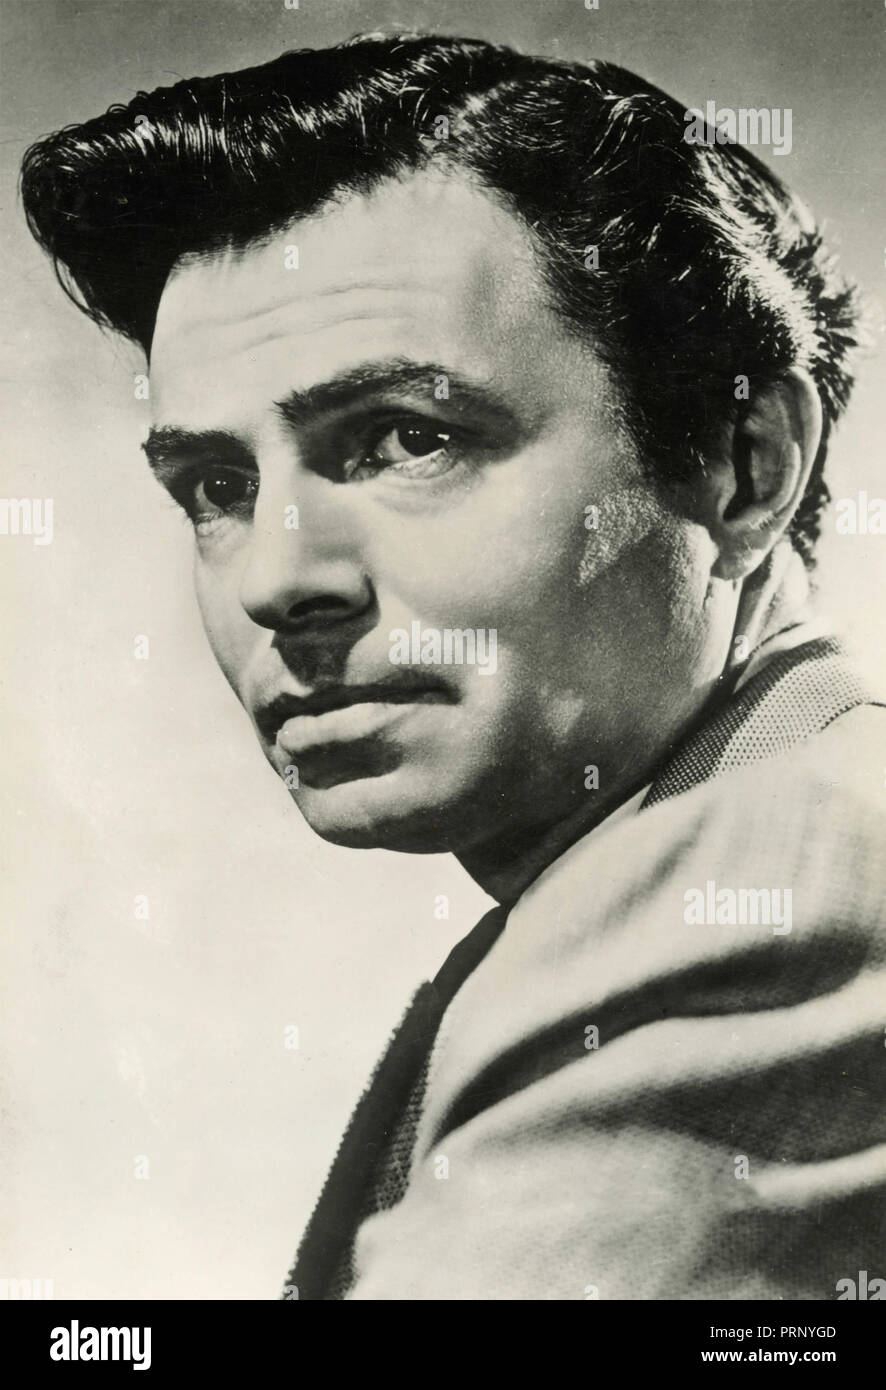 El actor inglés James Mason, 1950 Foto de stock